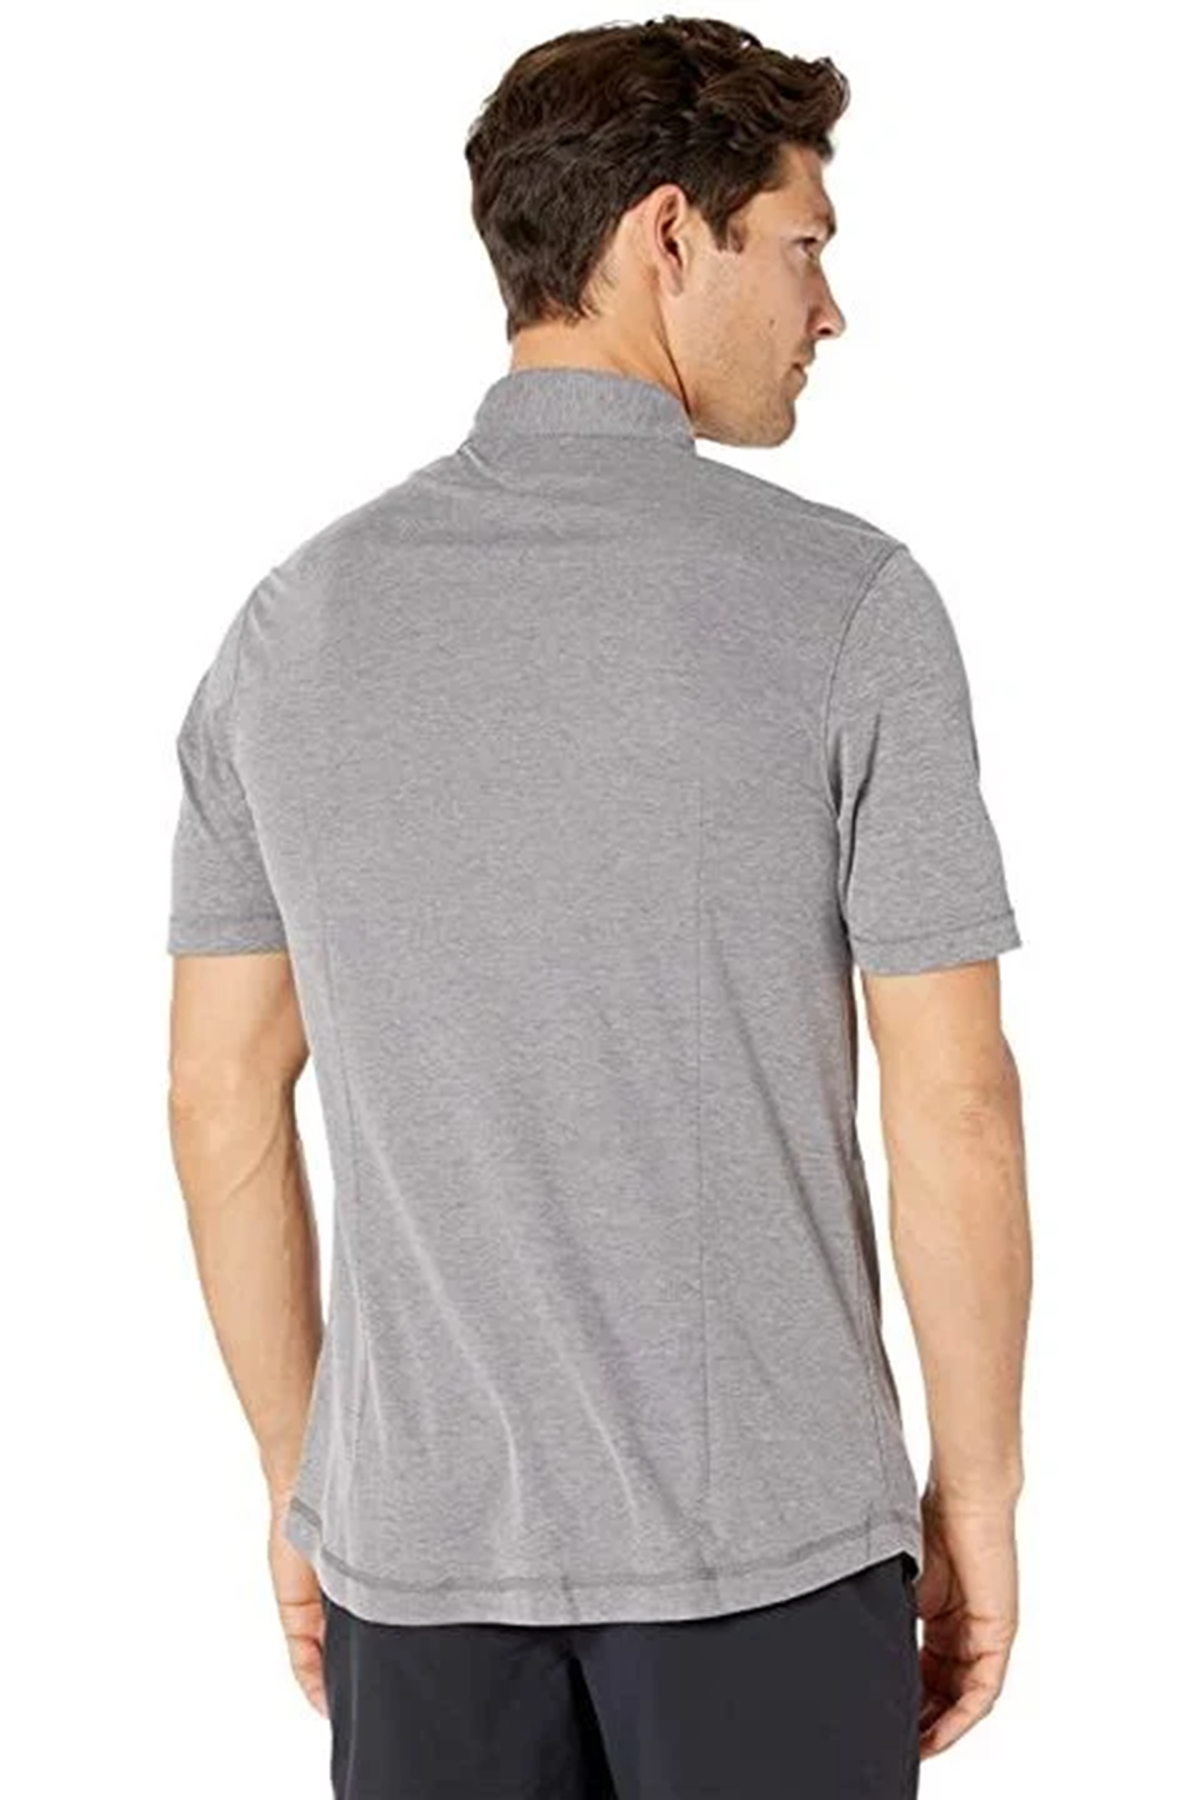 Linksoul Mens Full Button Short Sleeve Shirt LS1313 Grey